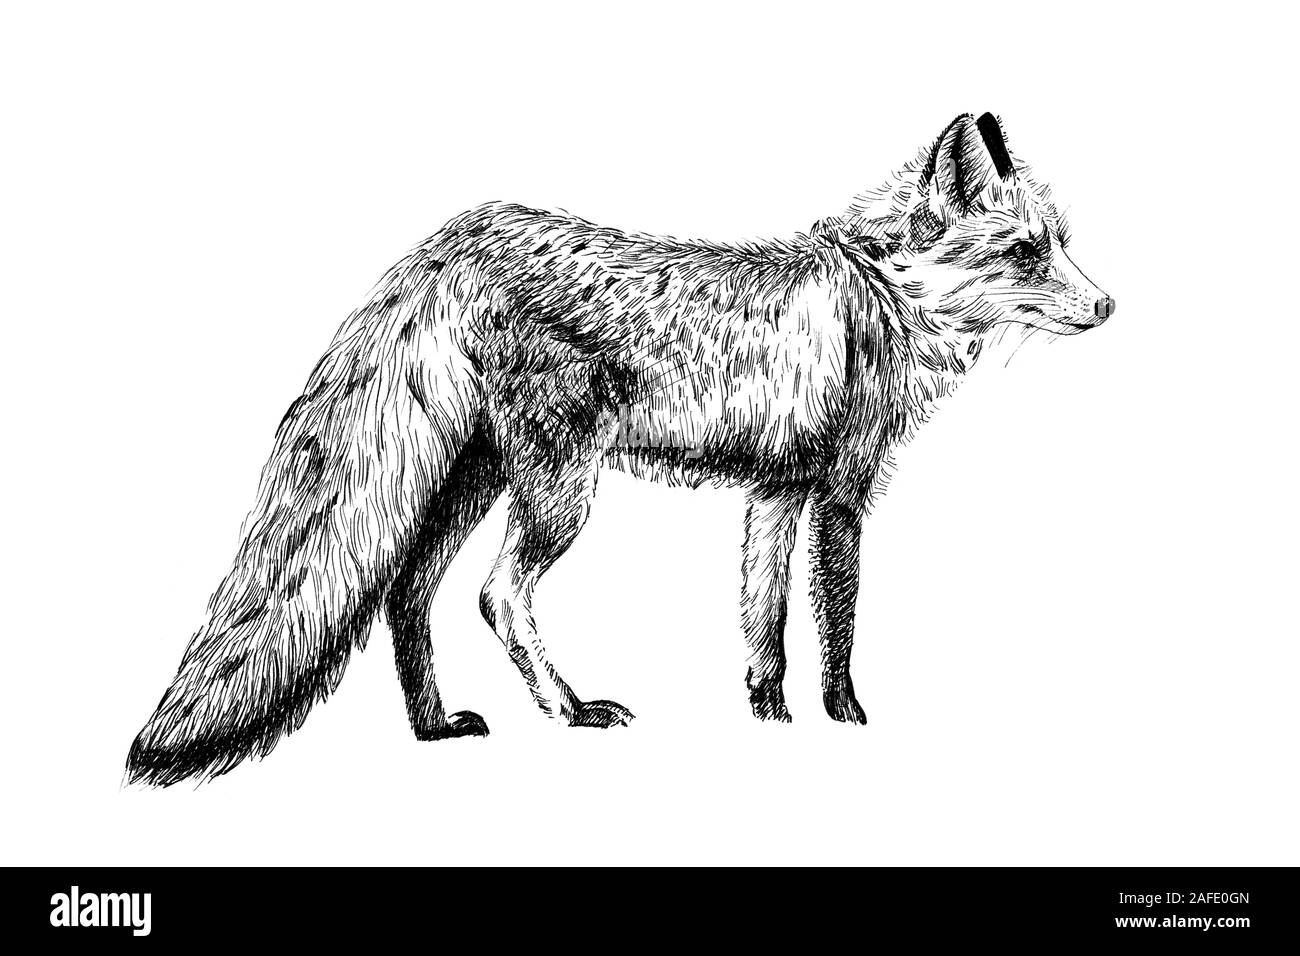 Fox dessiné à la main, croquis illustration monochrome graphique sur fond blanc (originaux, pas de traces) Banque D'Images